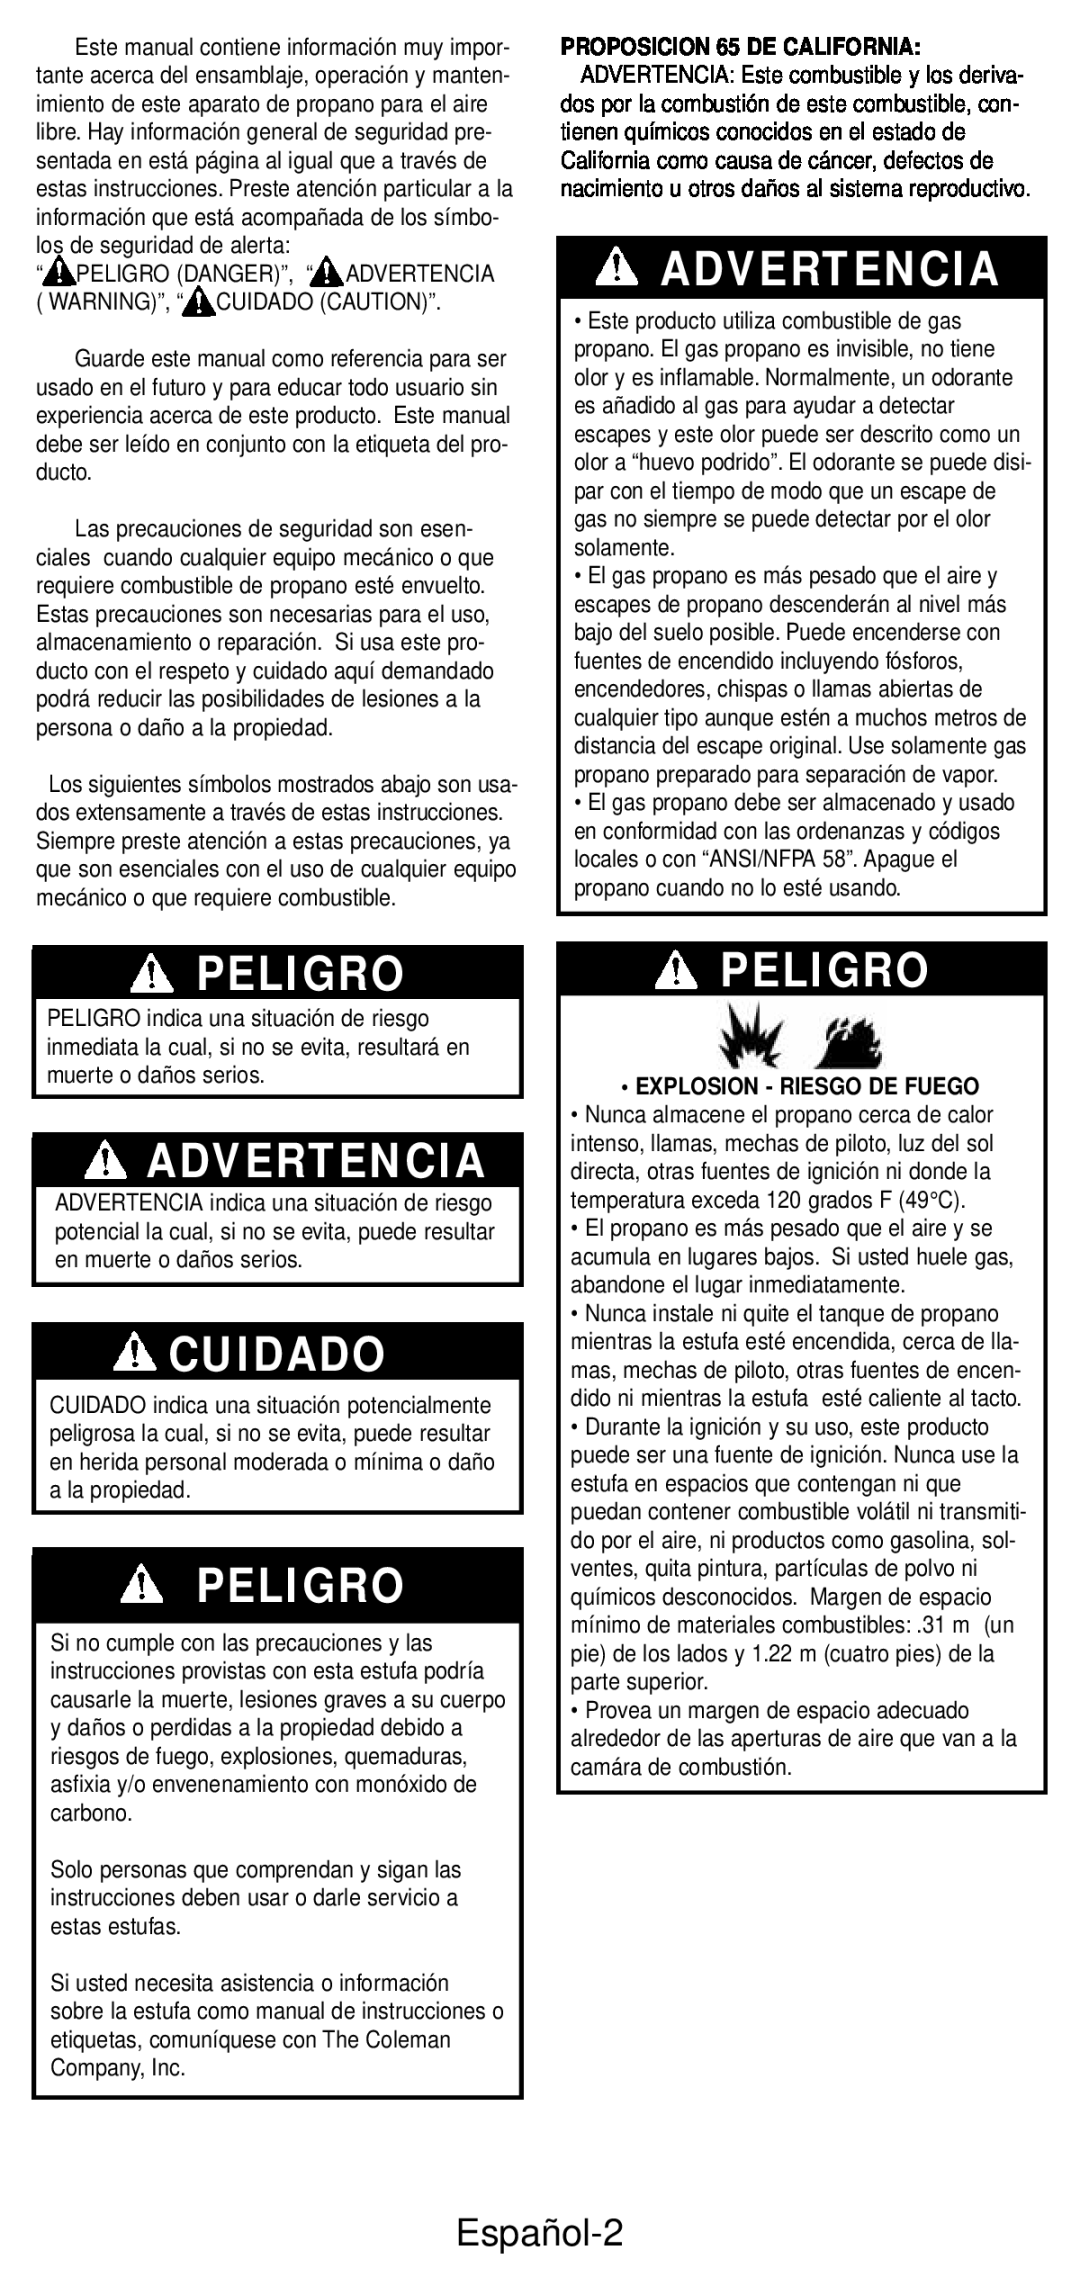 Coleman 5432A Series manual Advertencia, Peligro, Cuidado, Español-2, Explosion - Riesgo De Fuego 